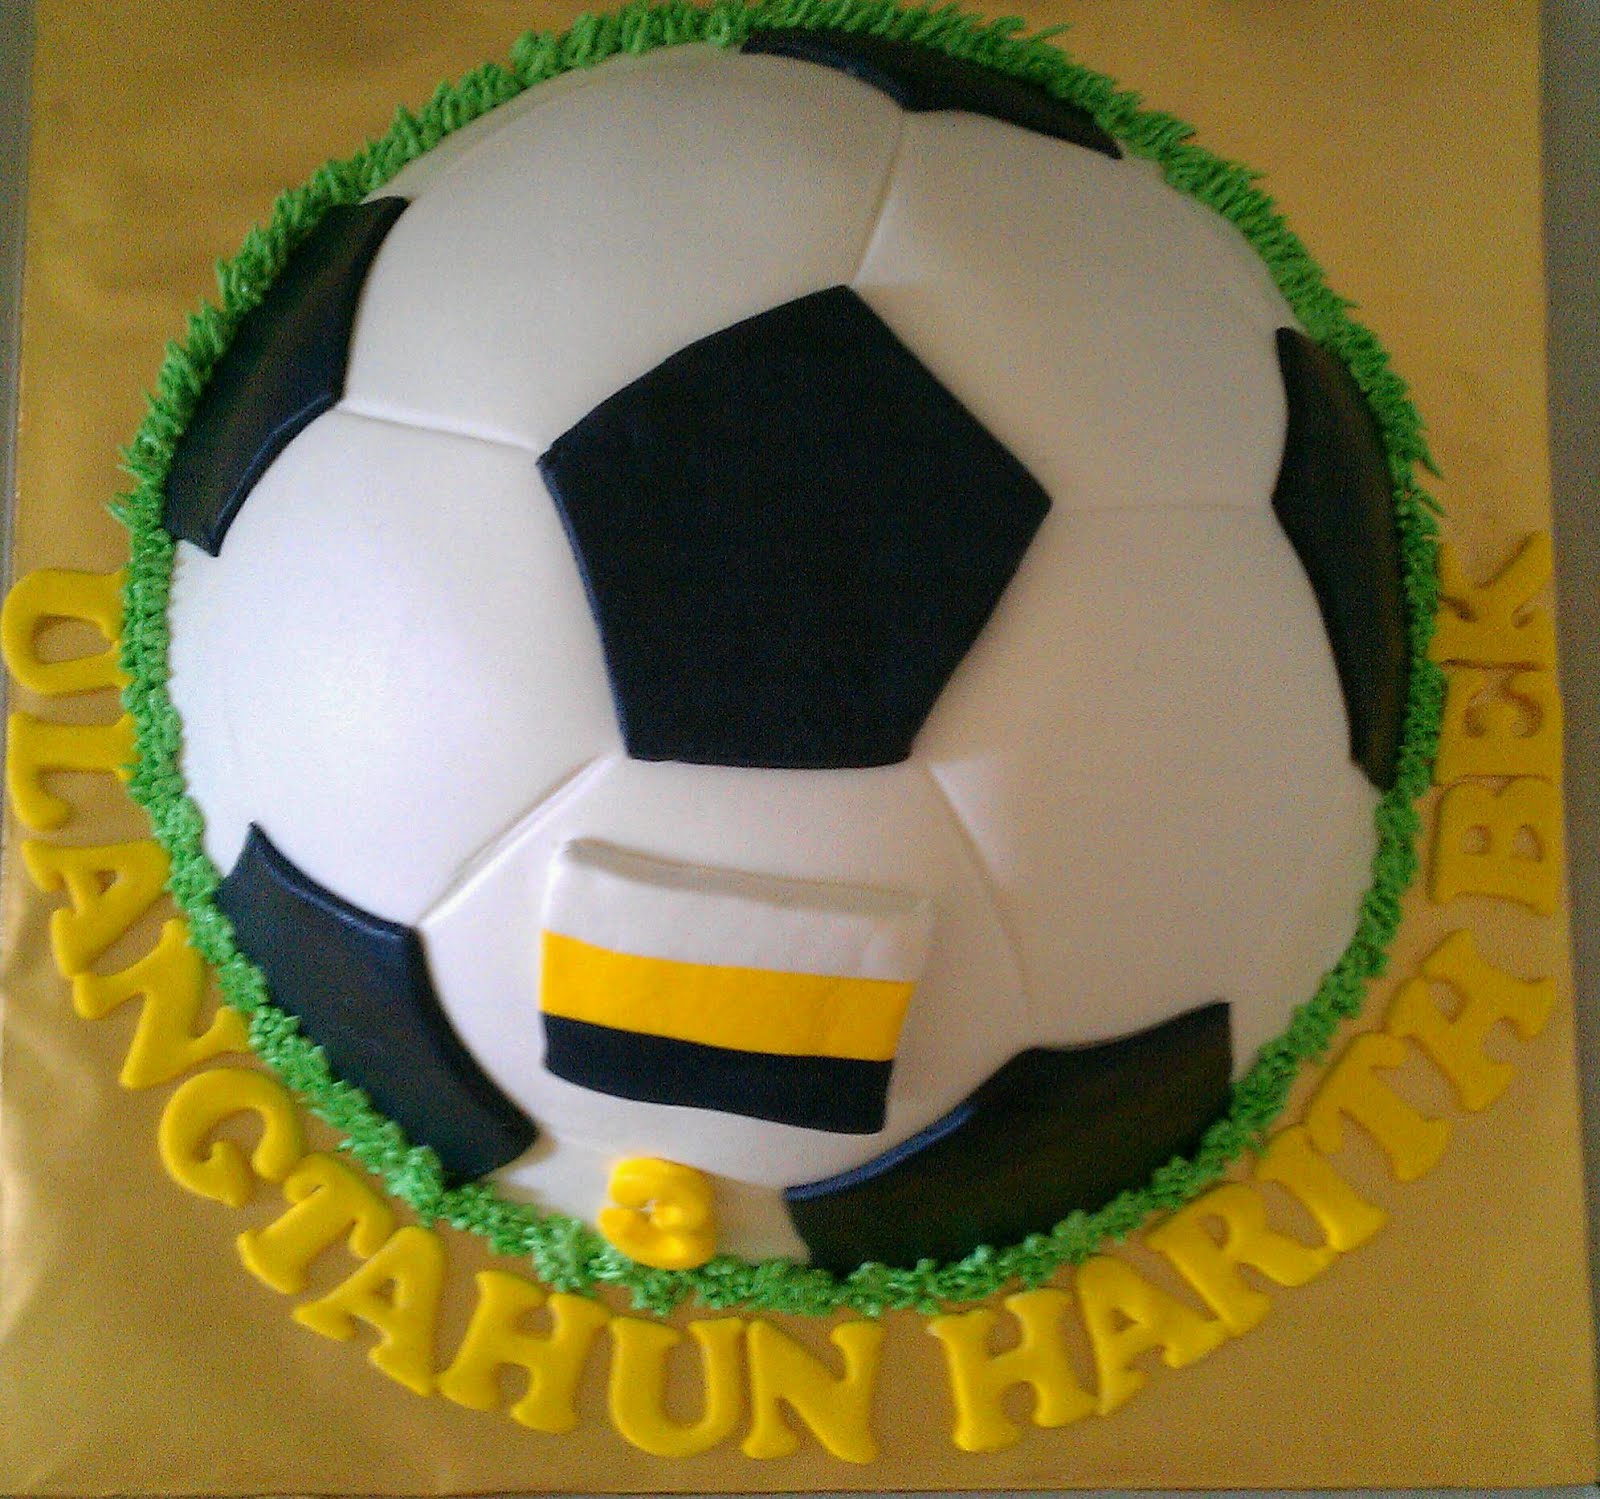 Football/soccer ball cake